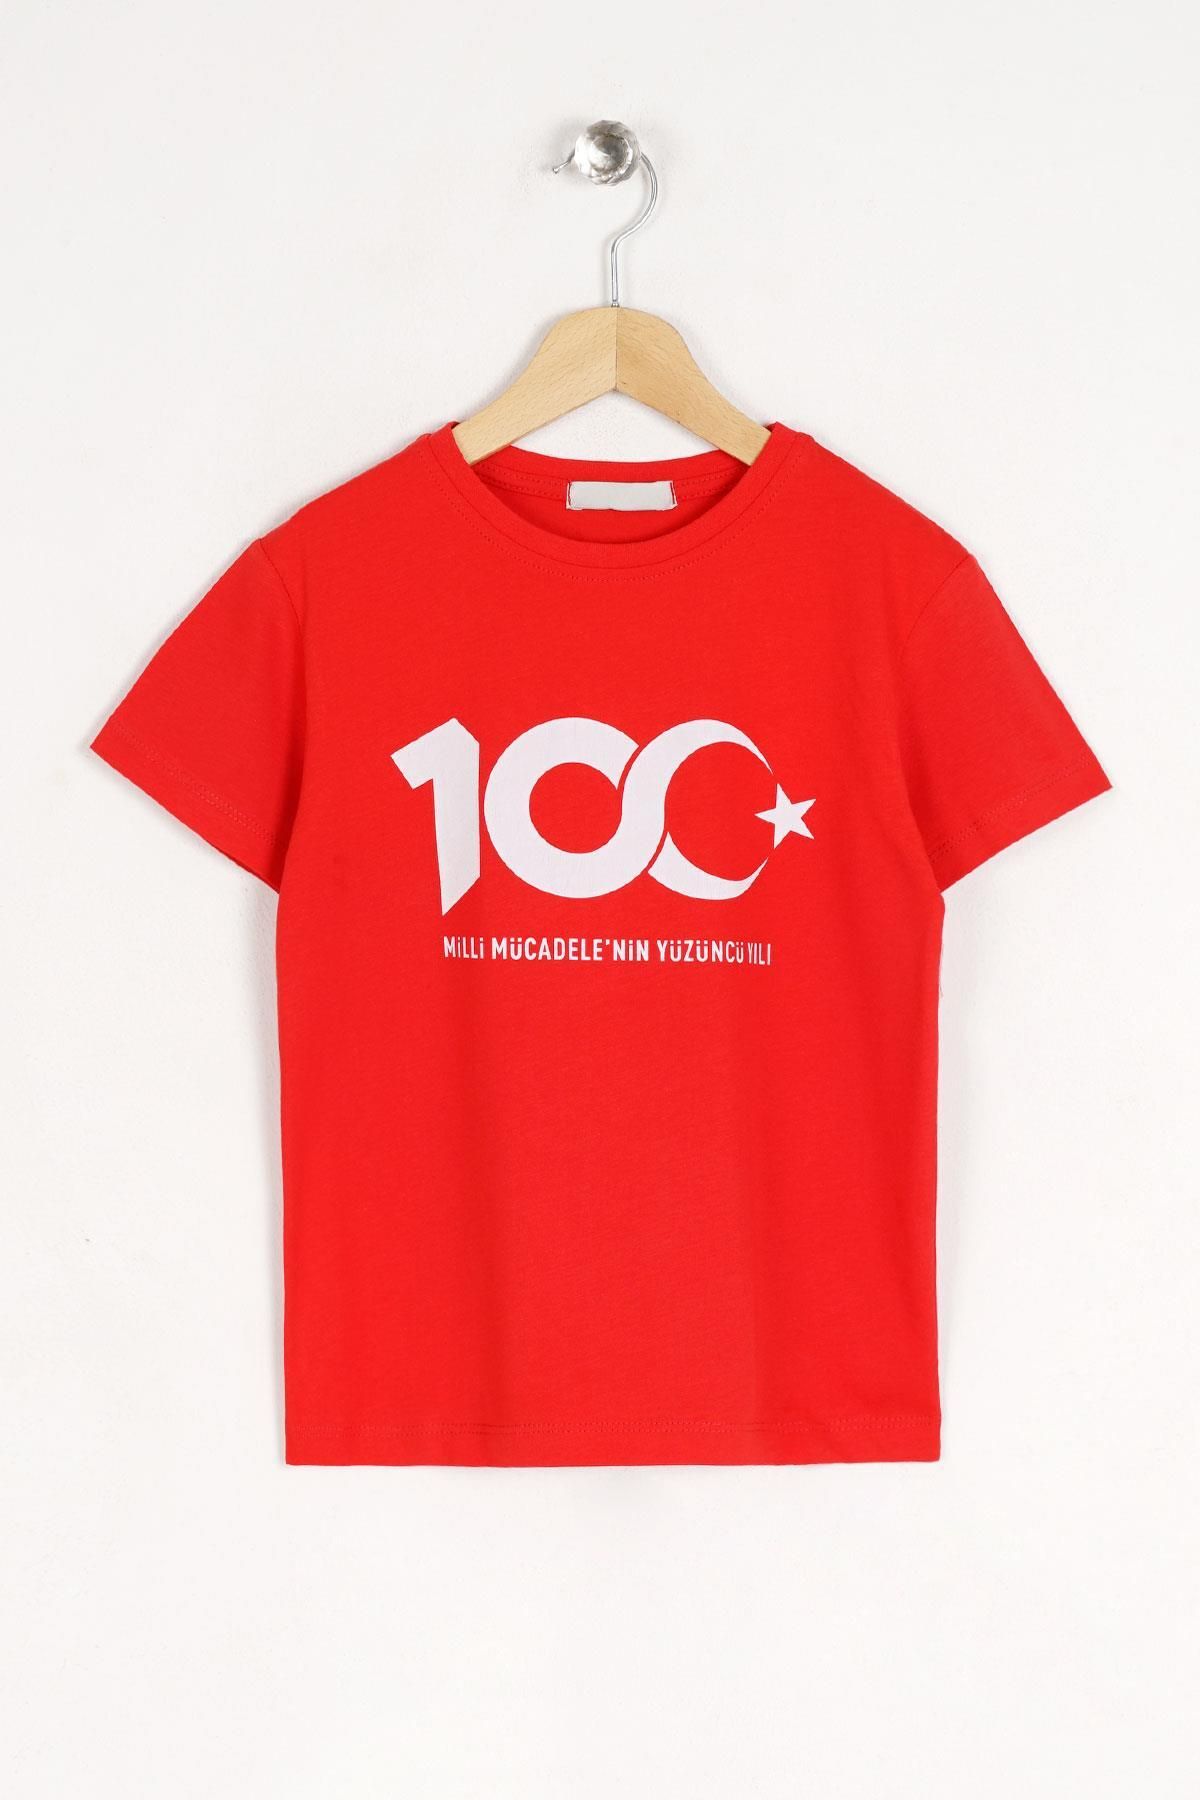 zepkids Bisiklet Yaka Kısa Kol Mıllı Mucadelenın 100 Uncu Yılı Baskılı Kırmızı Renk Tshirt